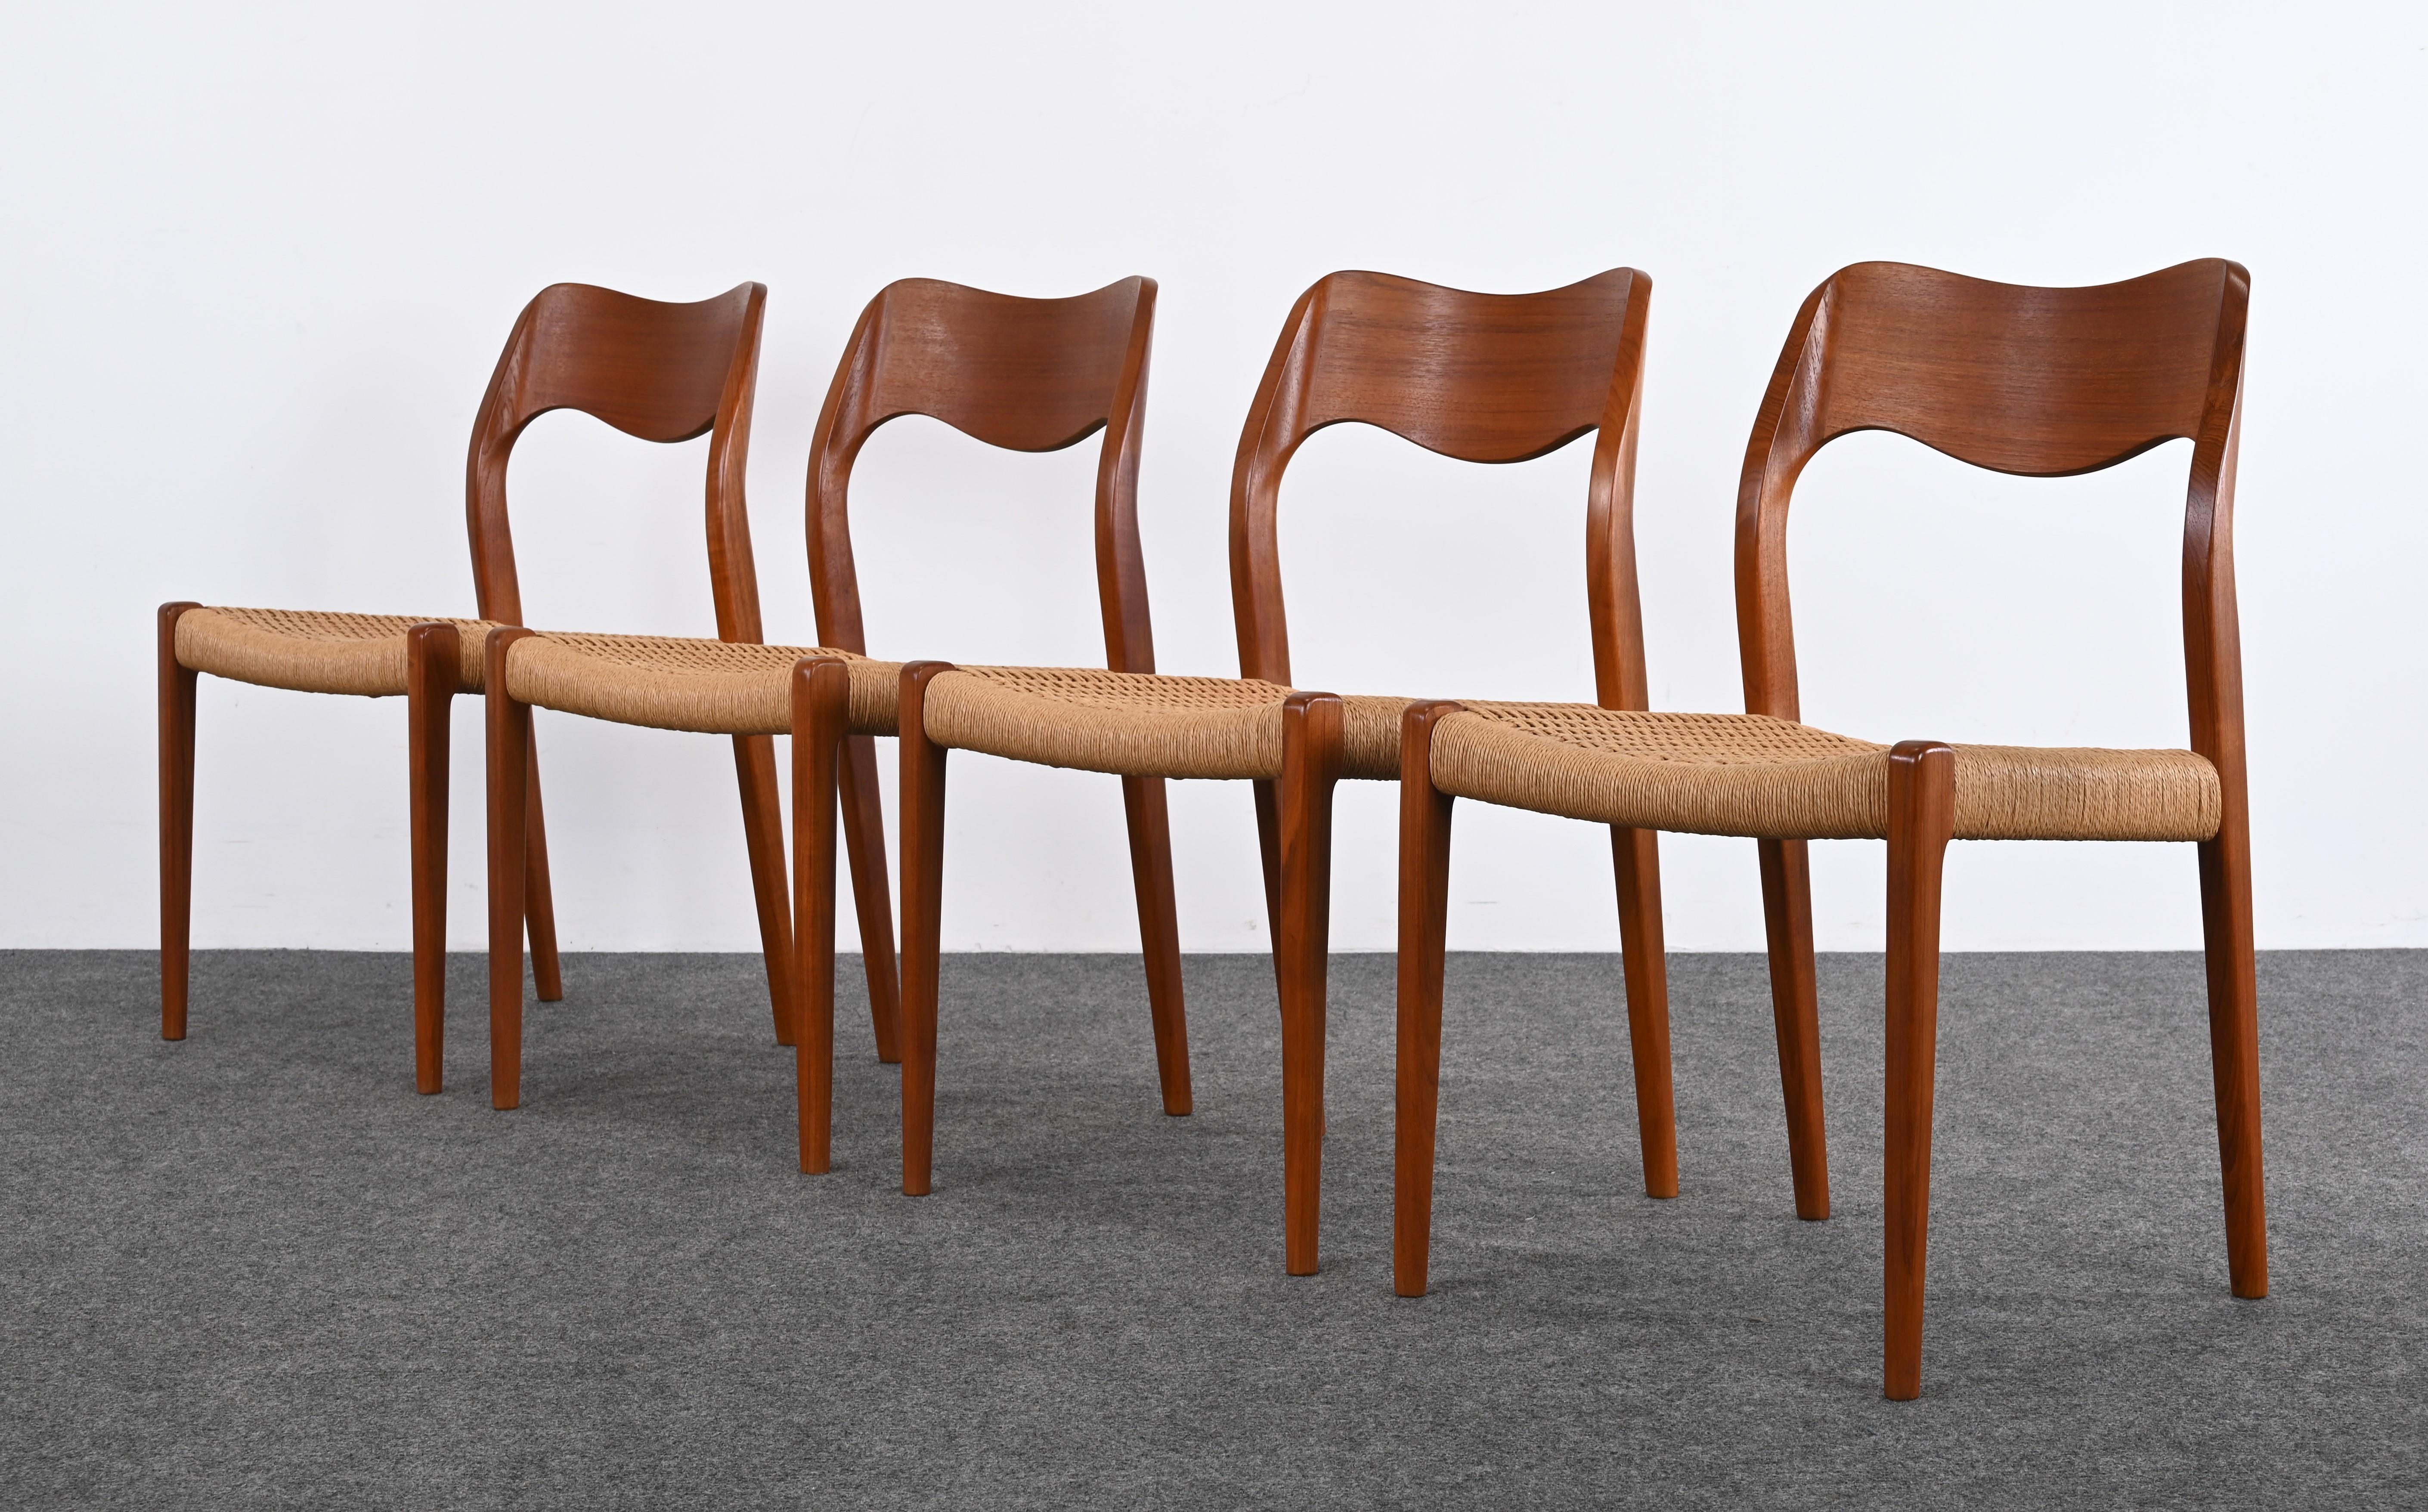 Un bel ensemble de quatre chaises de salle à manger en teck, modèle 71, conçues par Niels Otto Moller pour I.L.A. Mollers Mobelfabrik, vers les années 1960. Cet ensemble de quatre chaises conviendrait parfaitement à une petite table de salle à